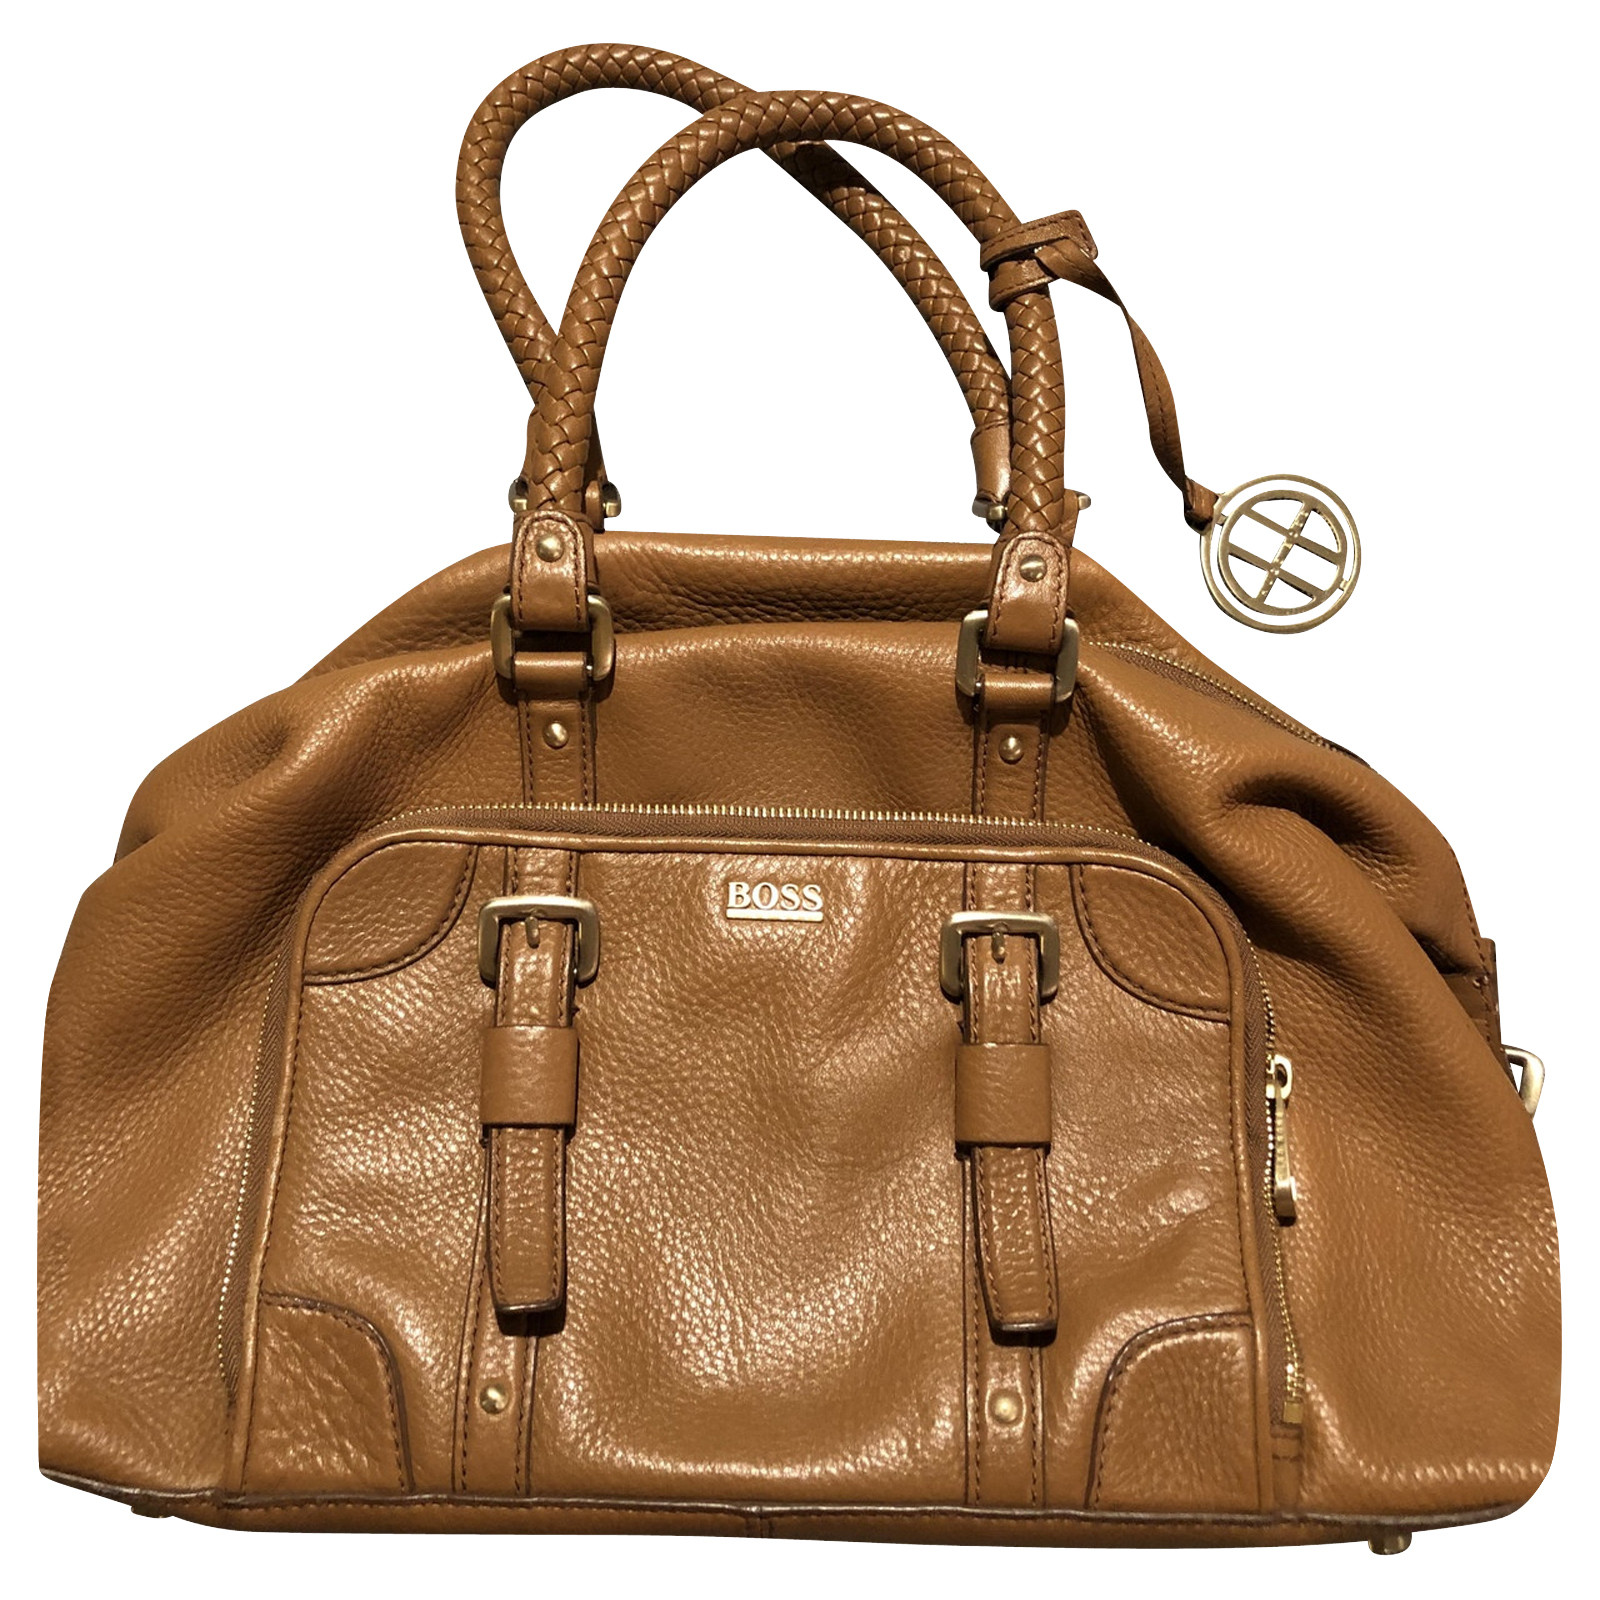 HUGO BOSS Women's Handtasche aus Leder in Braun